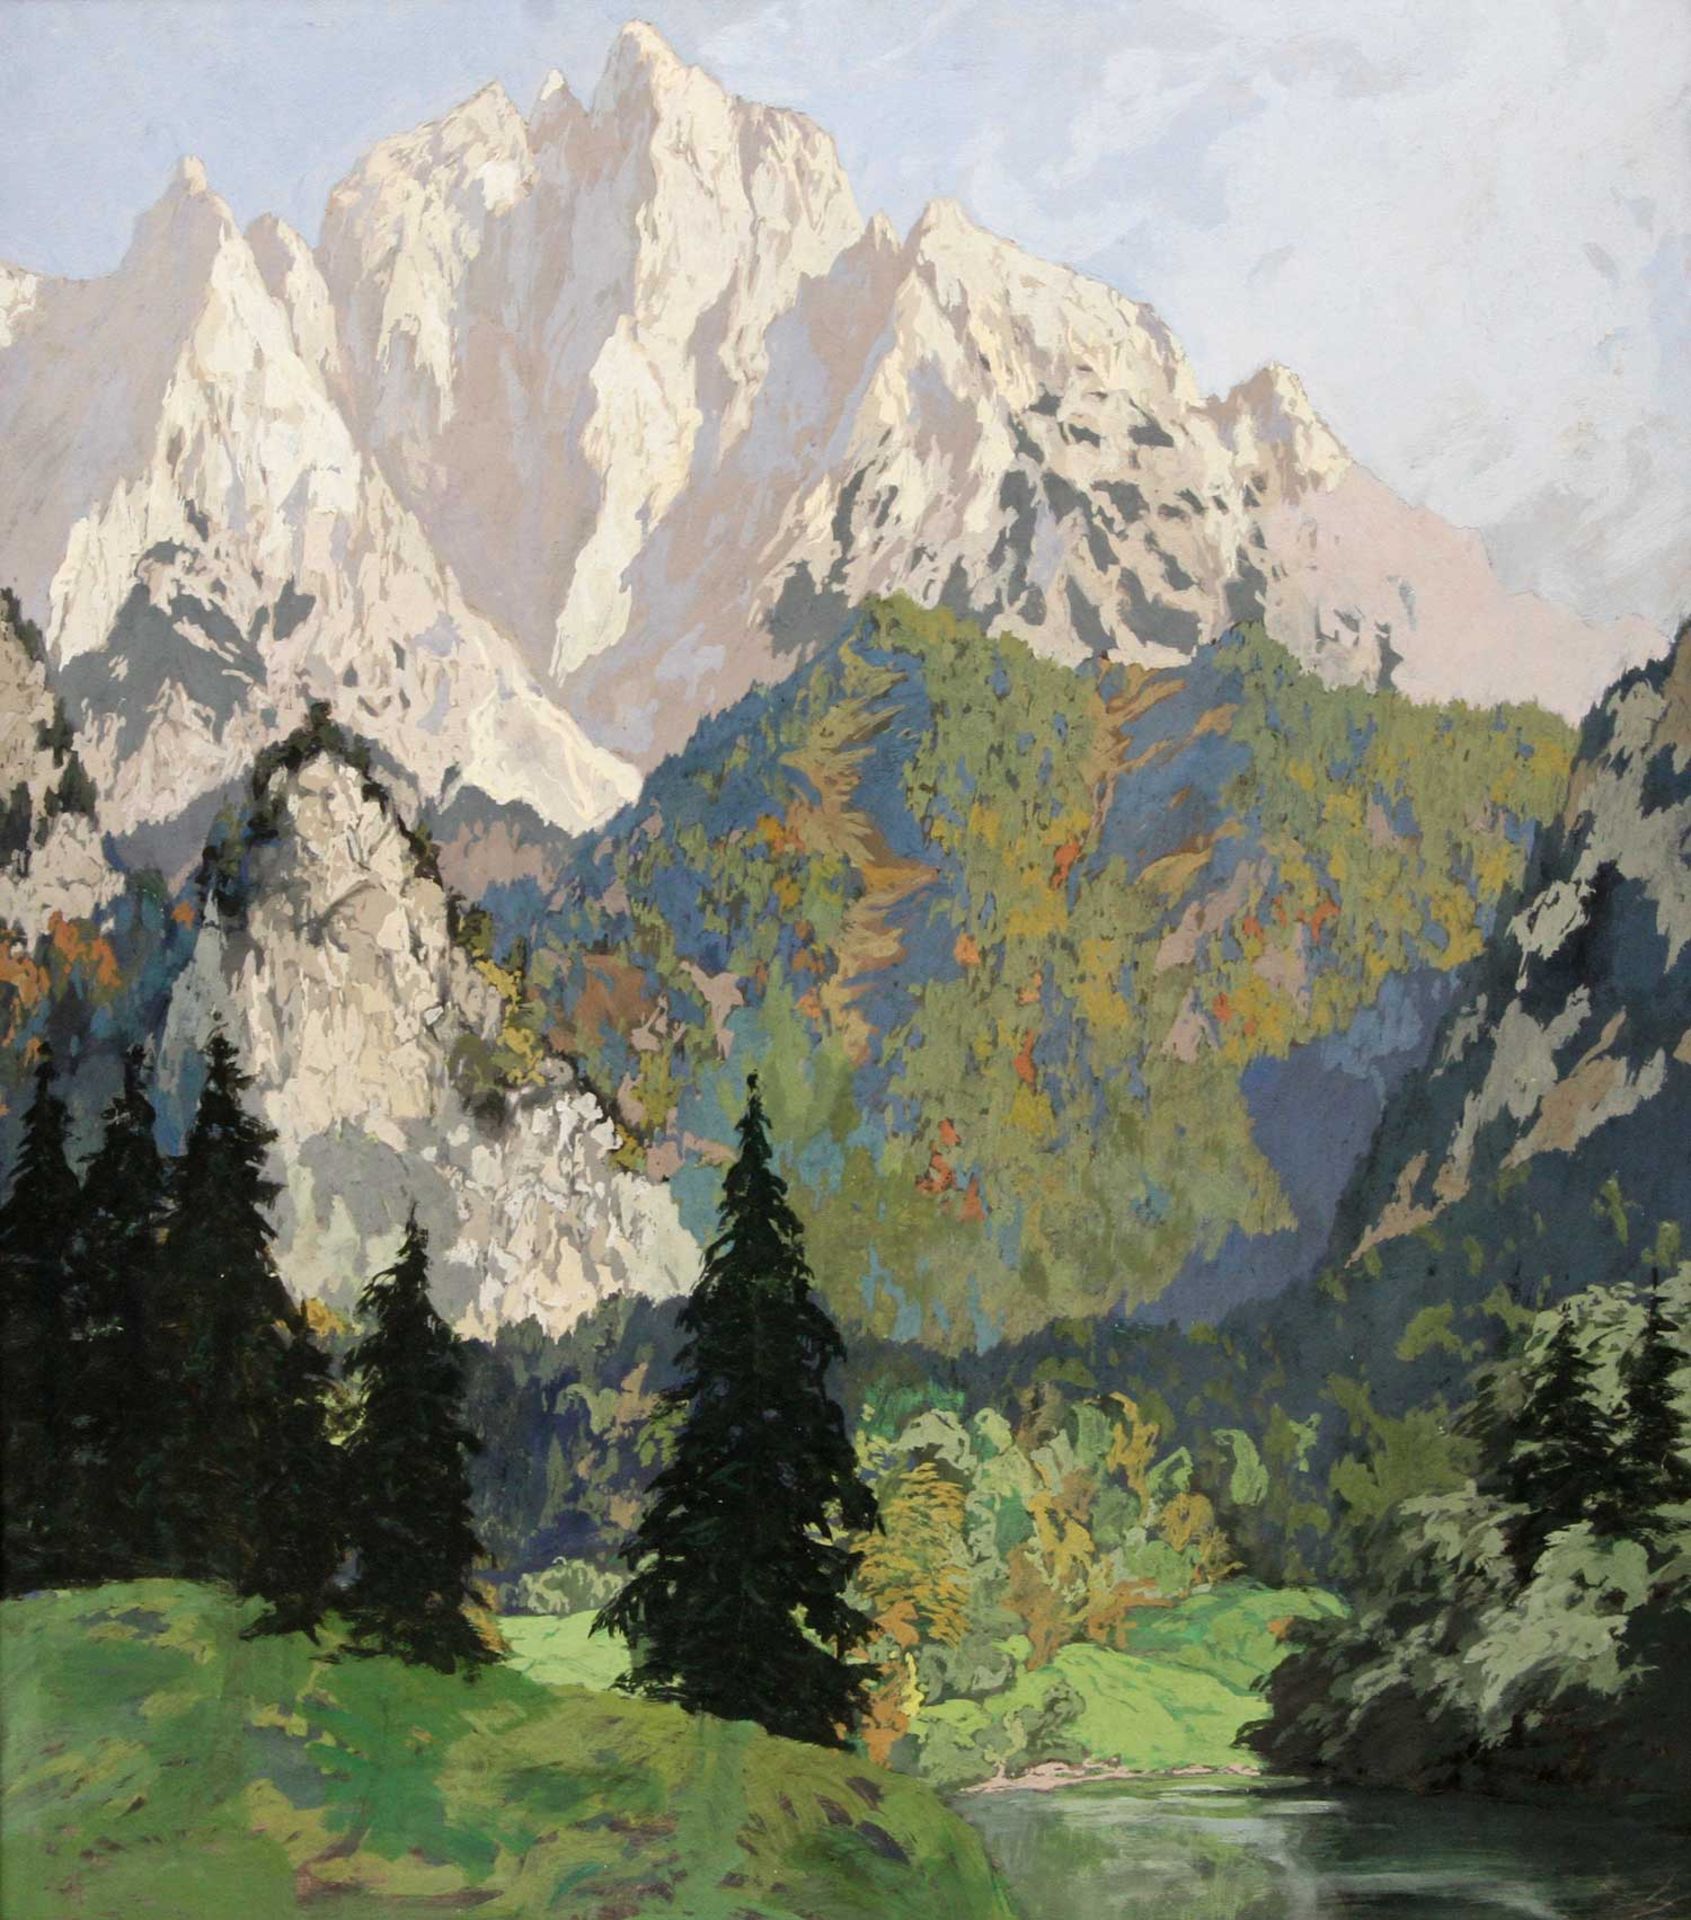 HODIENER, HUGO (Mährisch Trübau 1886-1945 Klais), "In den Dolomiten" das Hochgebirge mit